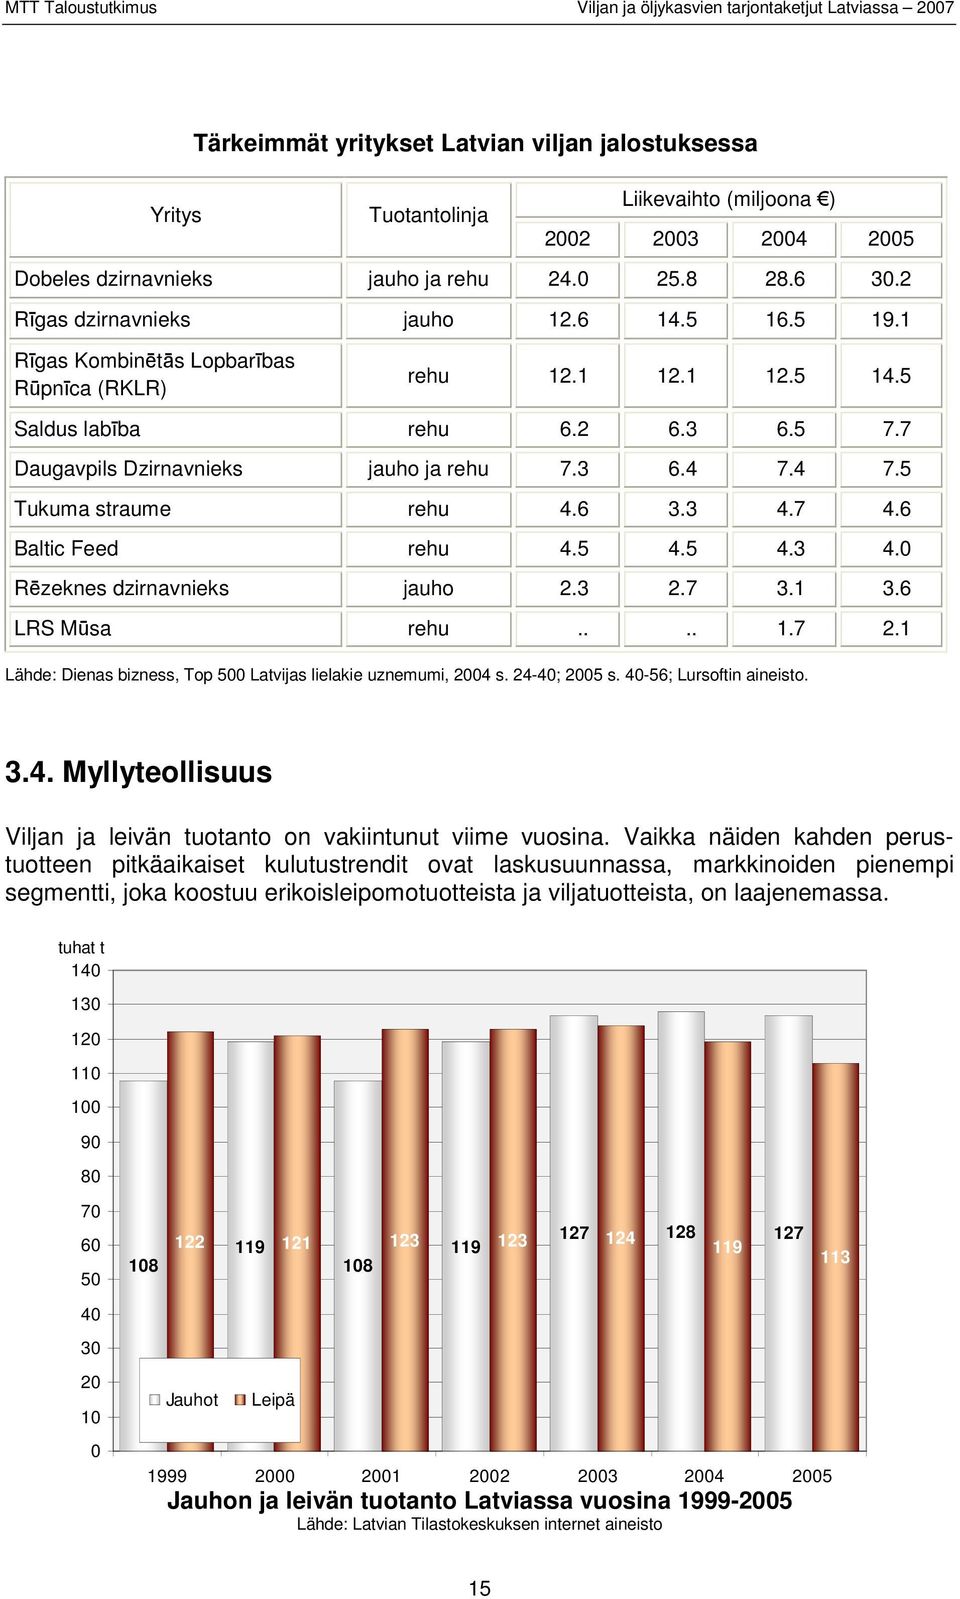 3 4.7 4.6 Baltic Feed rehu 4.5 4.5 4.3 4.0 Rēzeknes dzirnavnieks jauho 2.3 2.7 3.1 3.6 LRS Mūsa rehu.... 1.7 2.1 Lähde: Dienas bizness, Top 500 Latvijas lielakie uznemumi, 2004 s. 24-40; 2005 s.